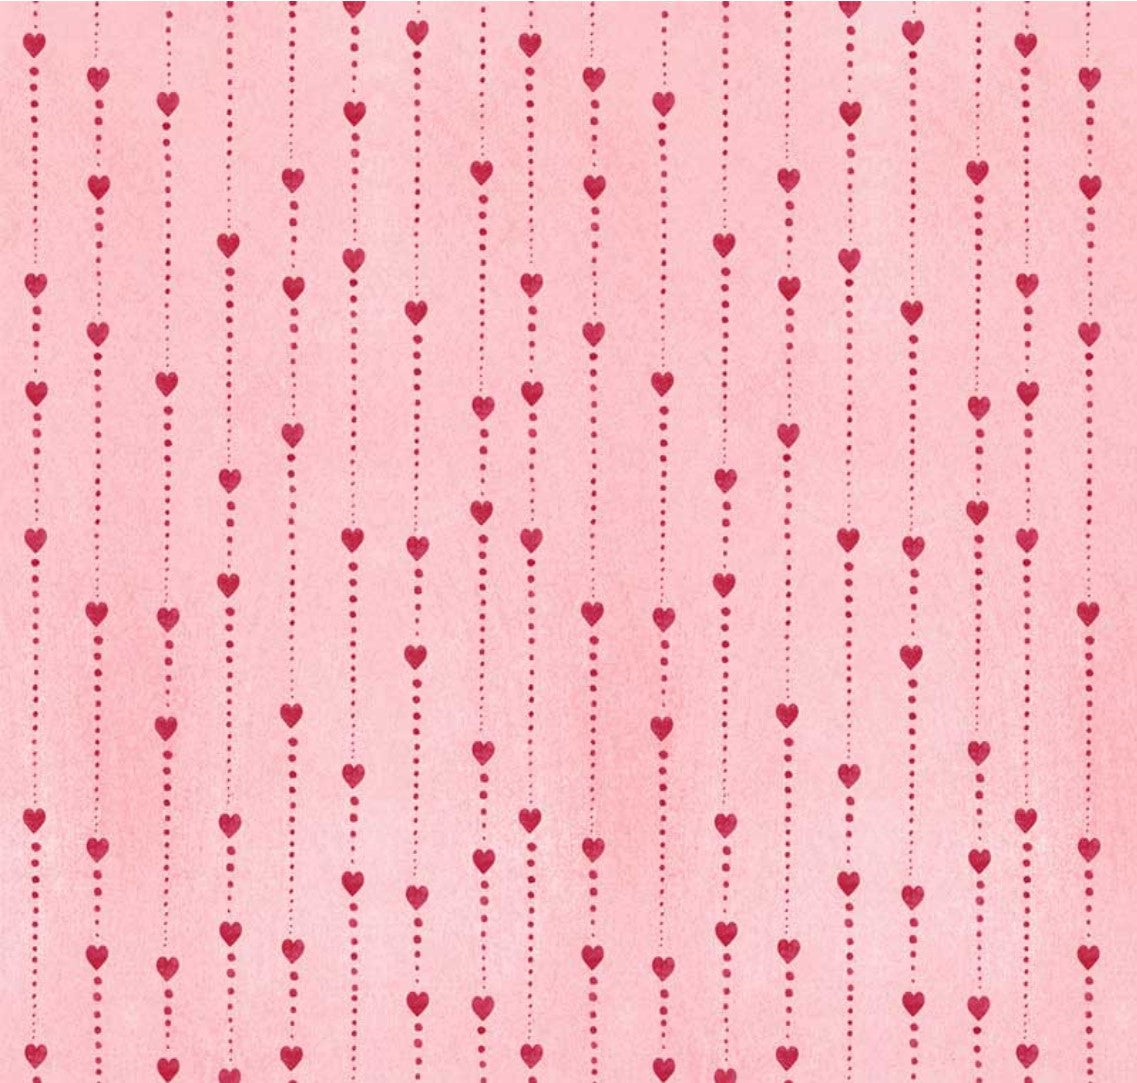 44 x 36 Love Birds Heart Stripe Pink 100% Cotton Fabric Valentine